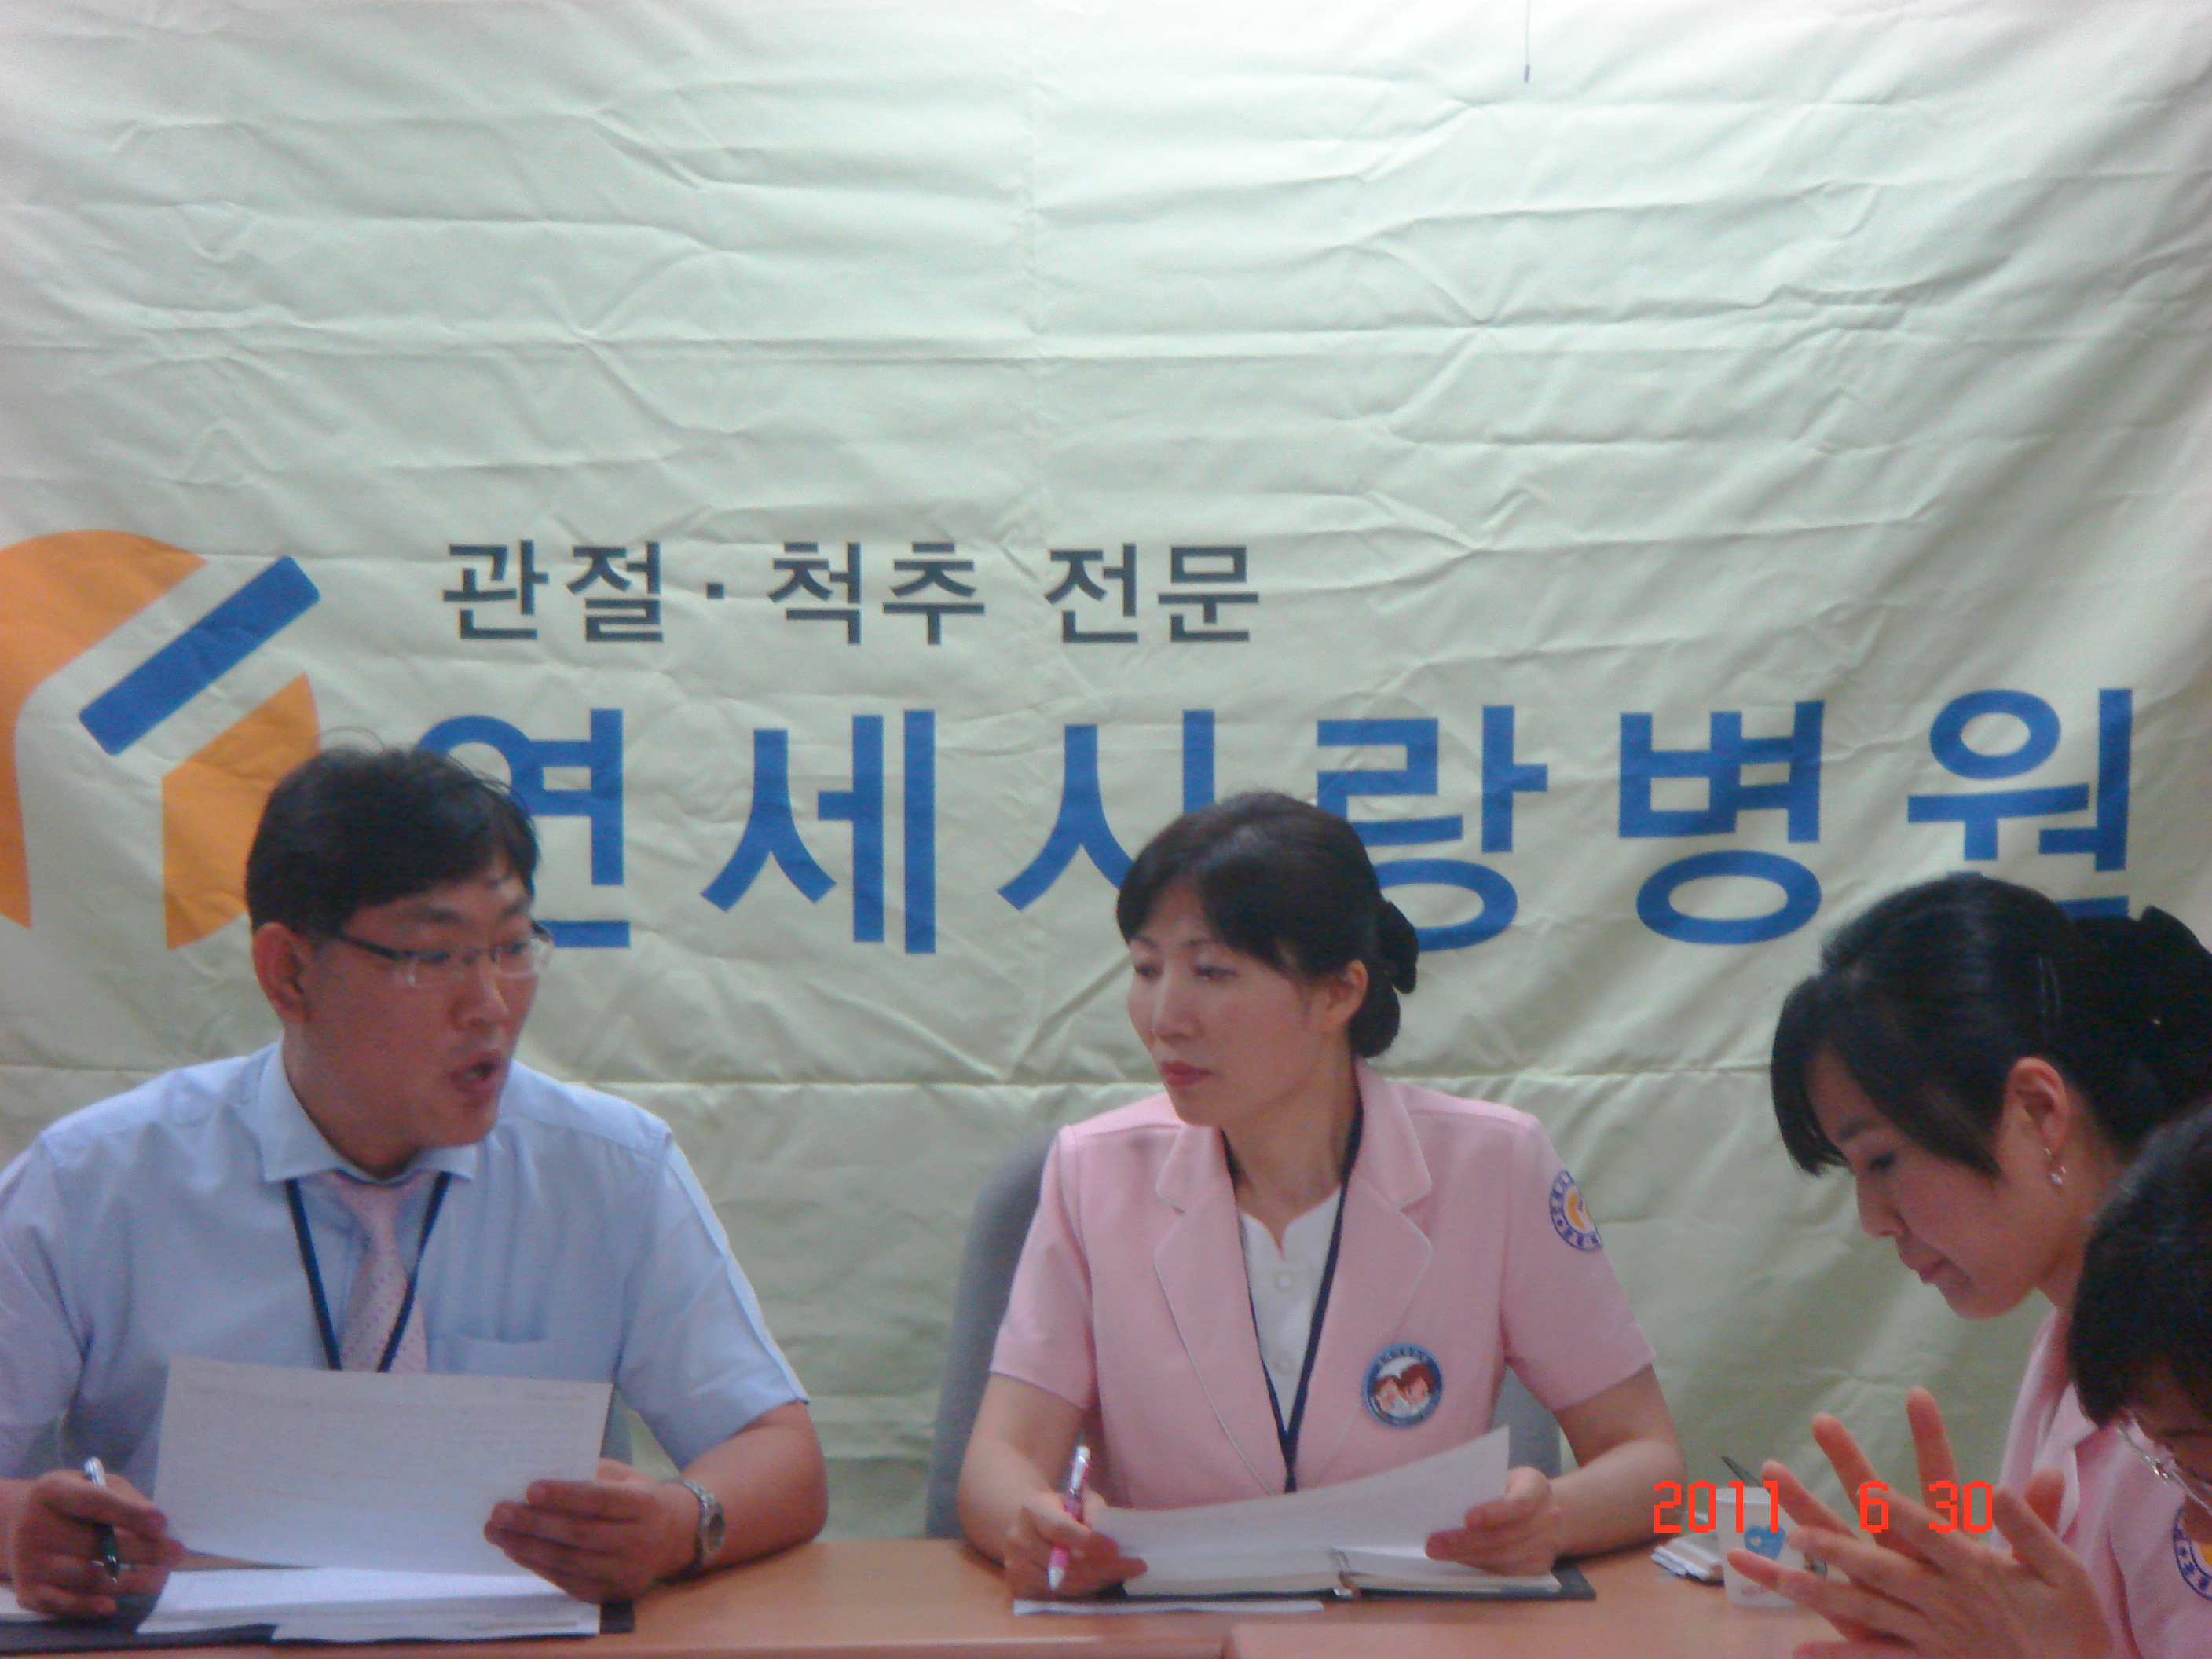 [강북점] 2011년 6월 30일 - 실무진 회의 개최 게시글의 4번째 첨부파일입니다.